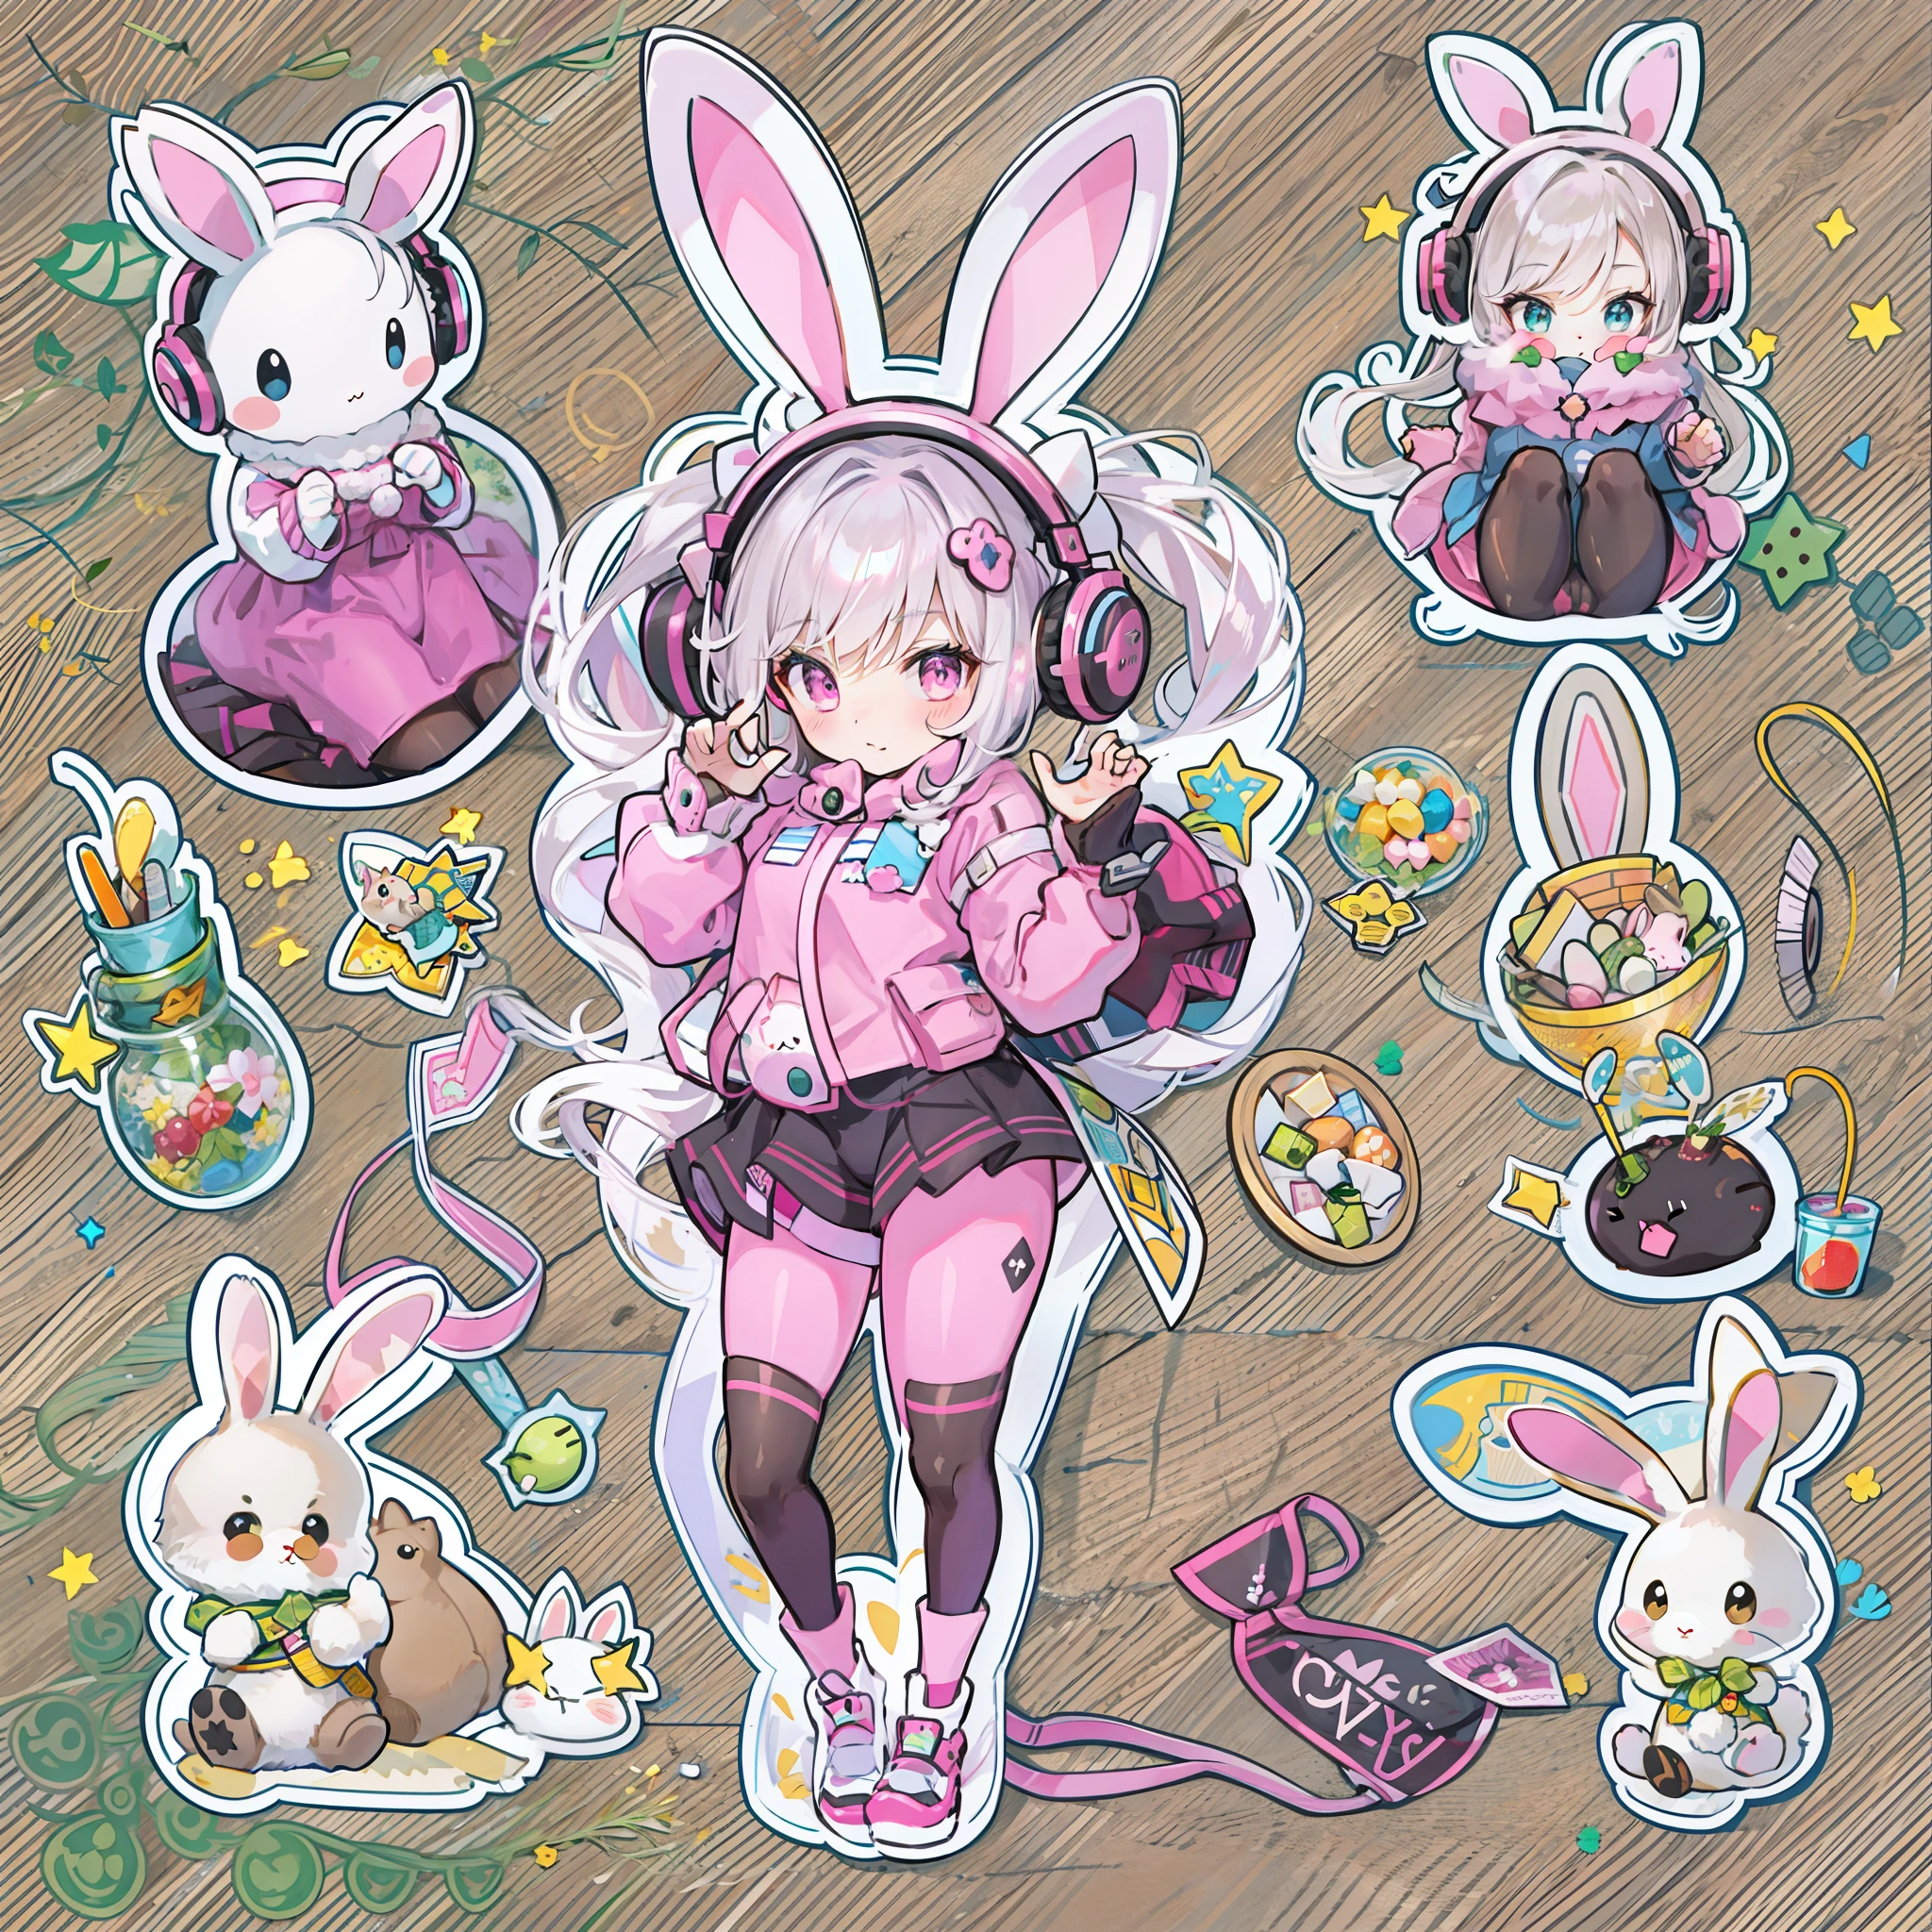 貼紙插圖, 愛麗絲 \(点头\), 粉紅色緊身衣 獸耳耳機 閃亮衣服 雙馬尾乳膠緊身衣,兔子姿勢,可愛的裝飾與兔子物品,